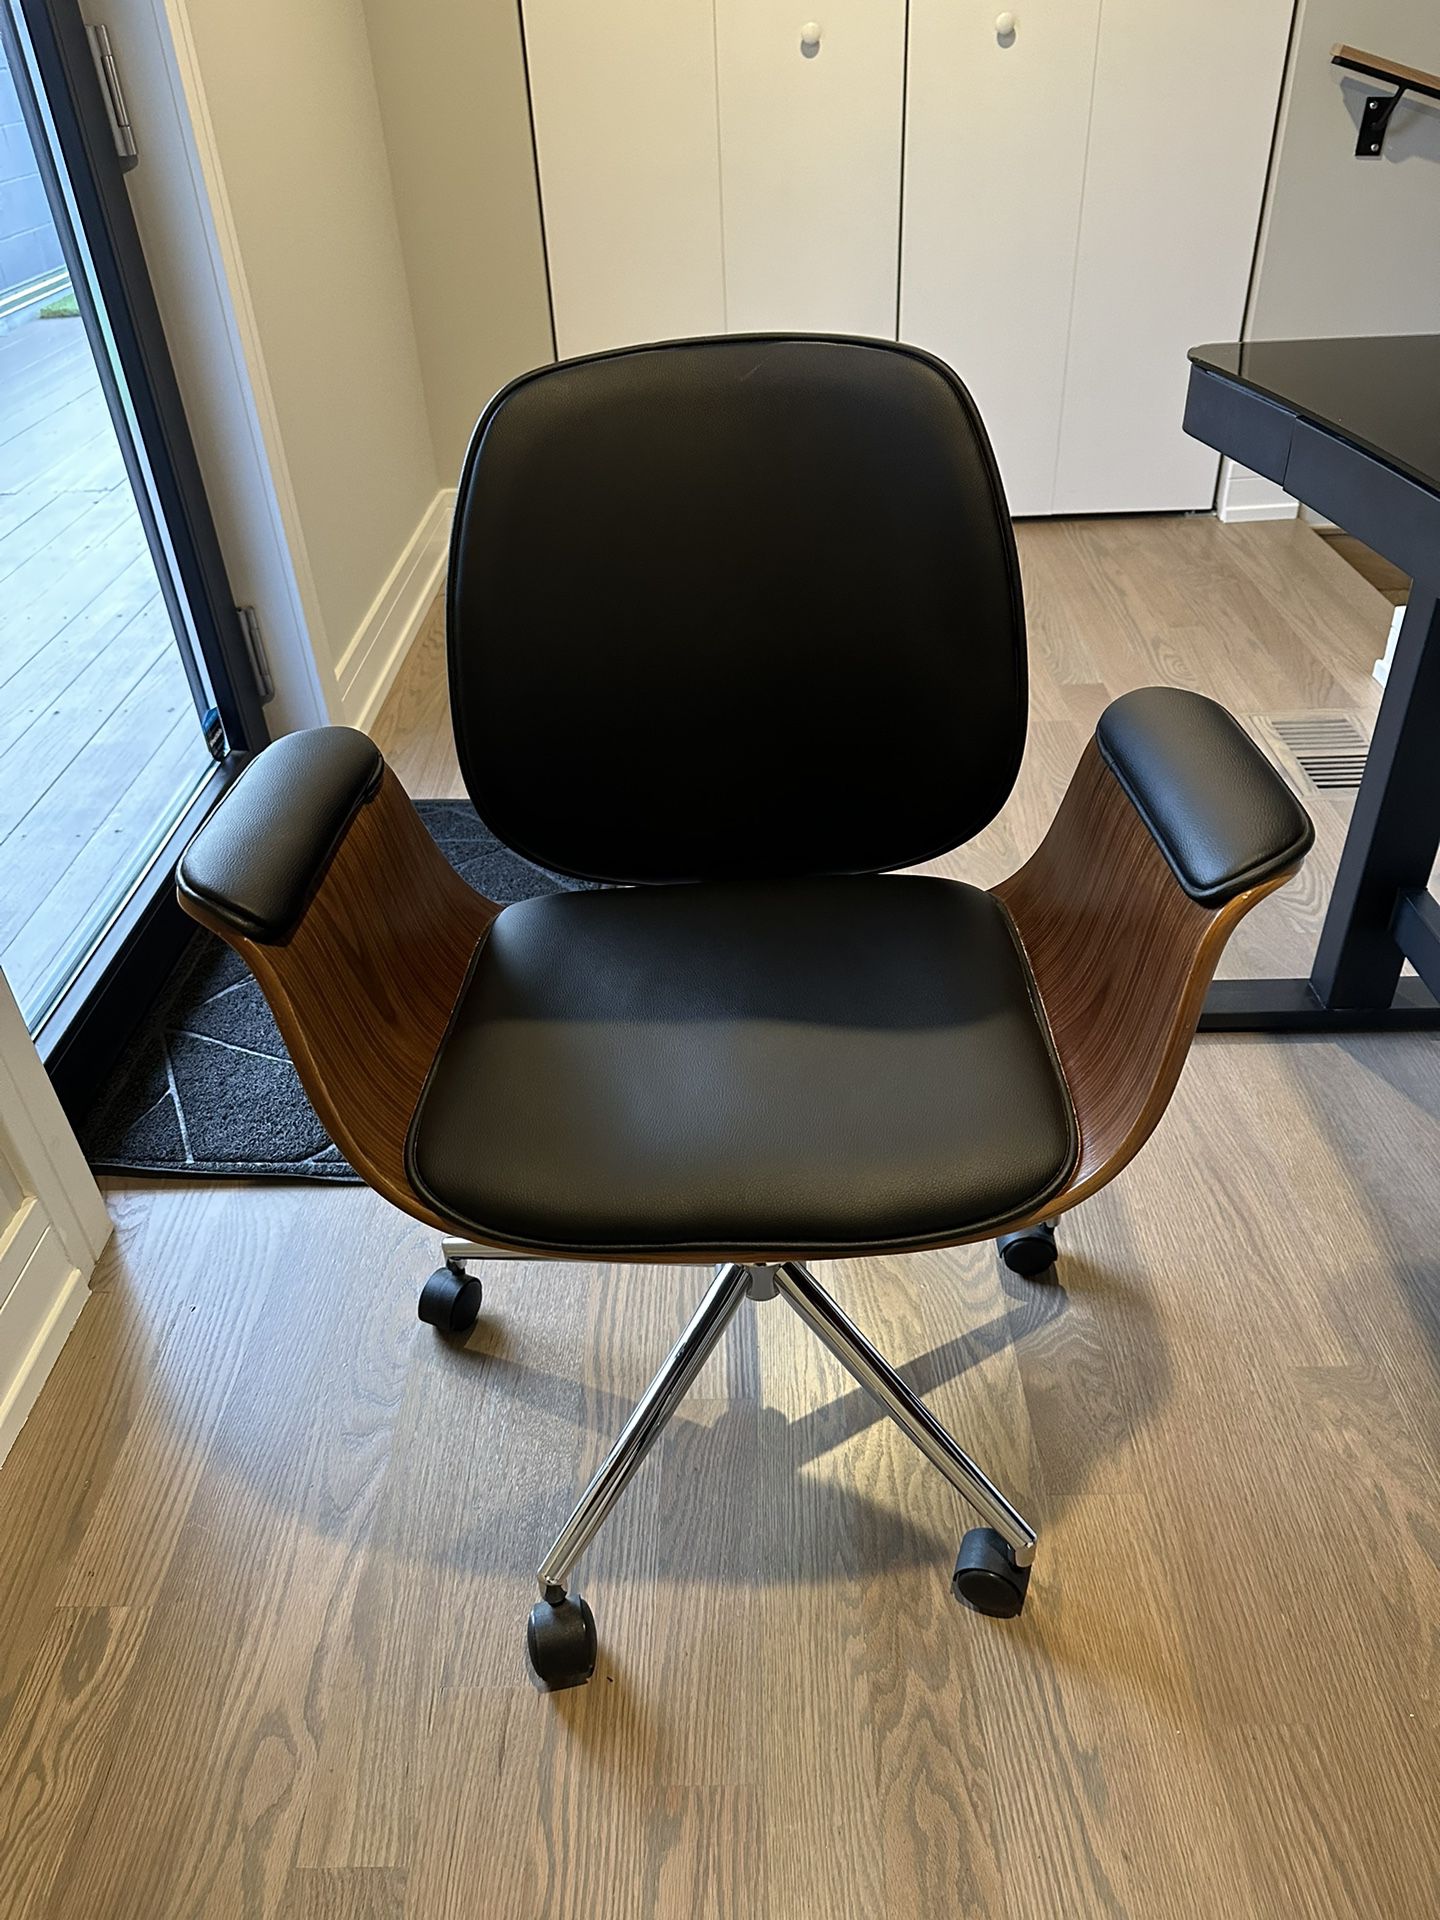 Modern Office chair